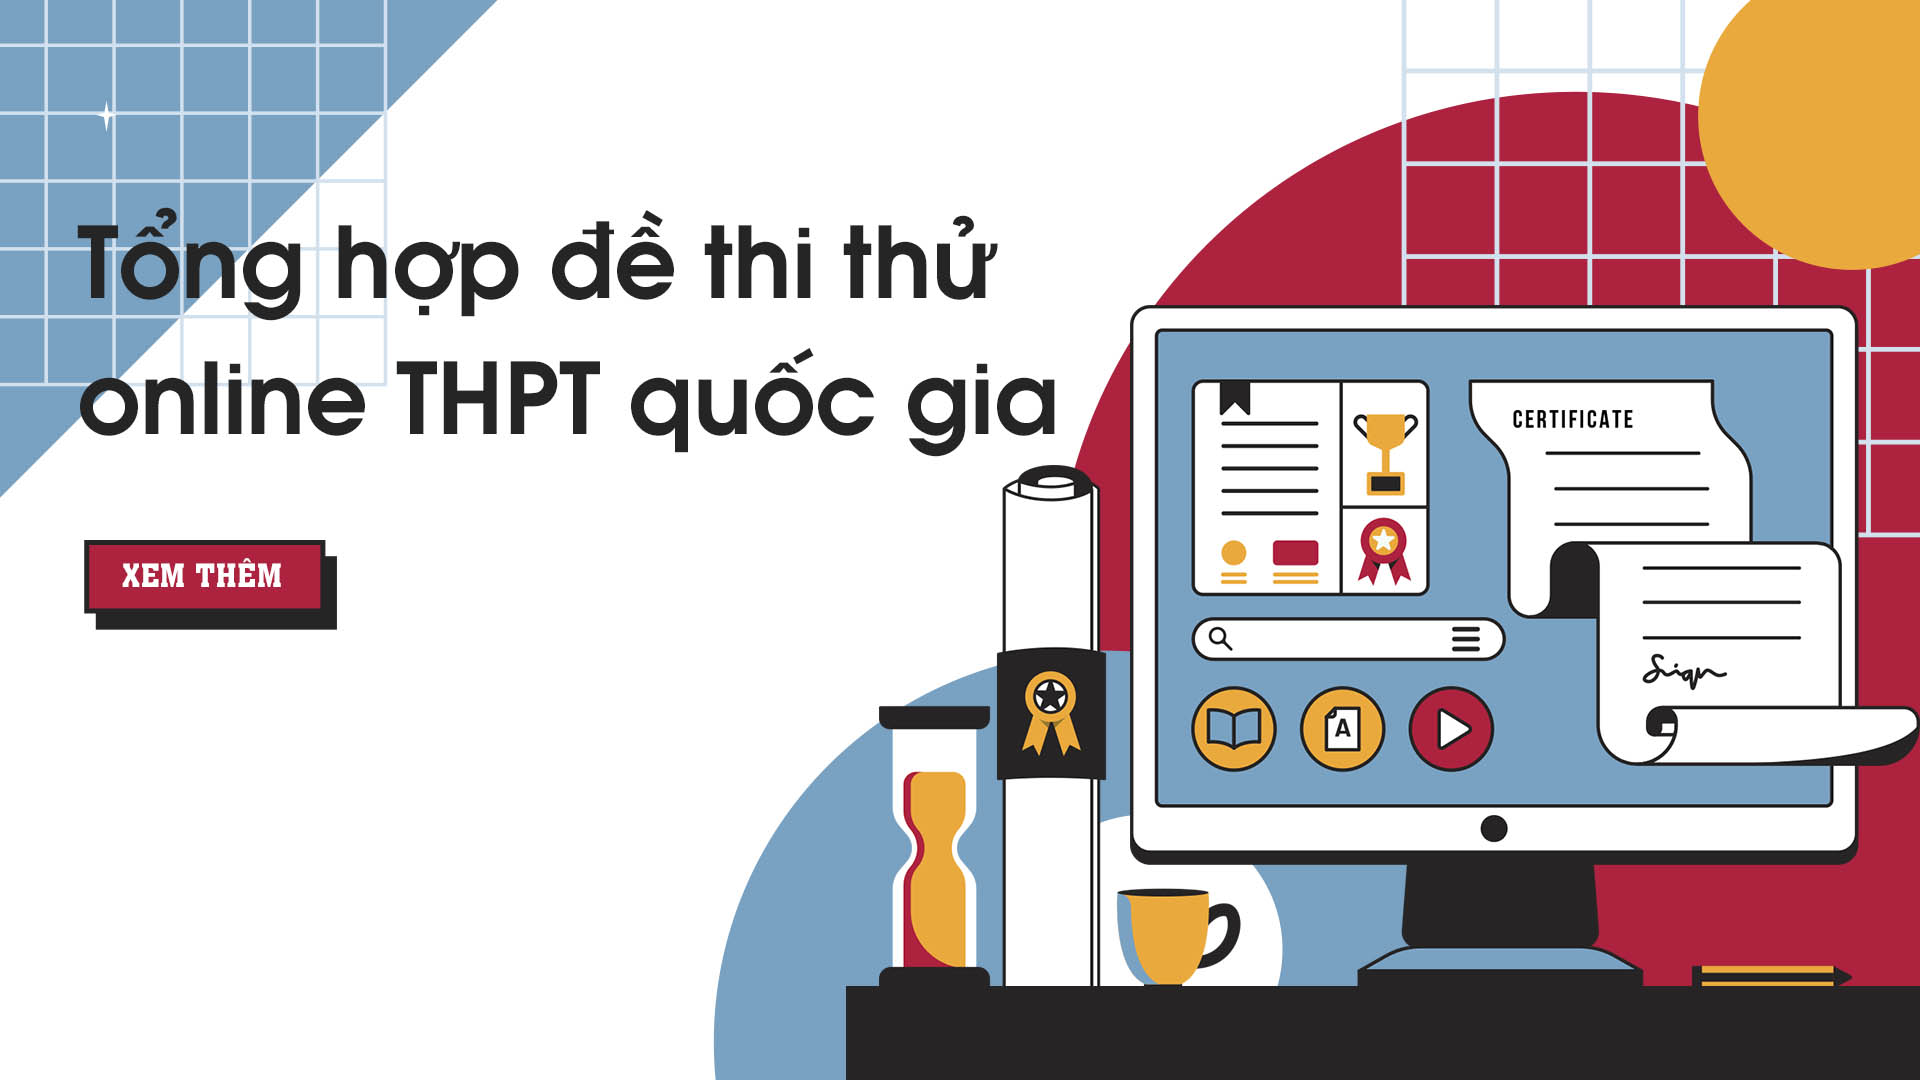 Tổng hợp đề thi thử online THPT quốc gia